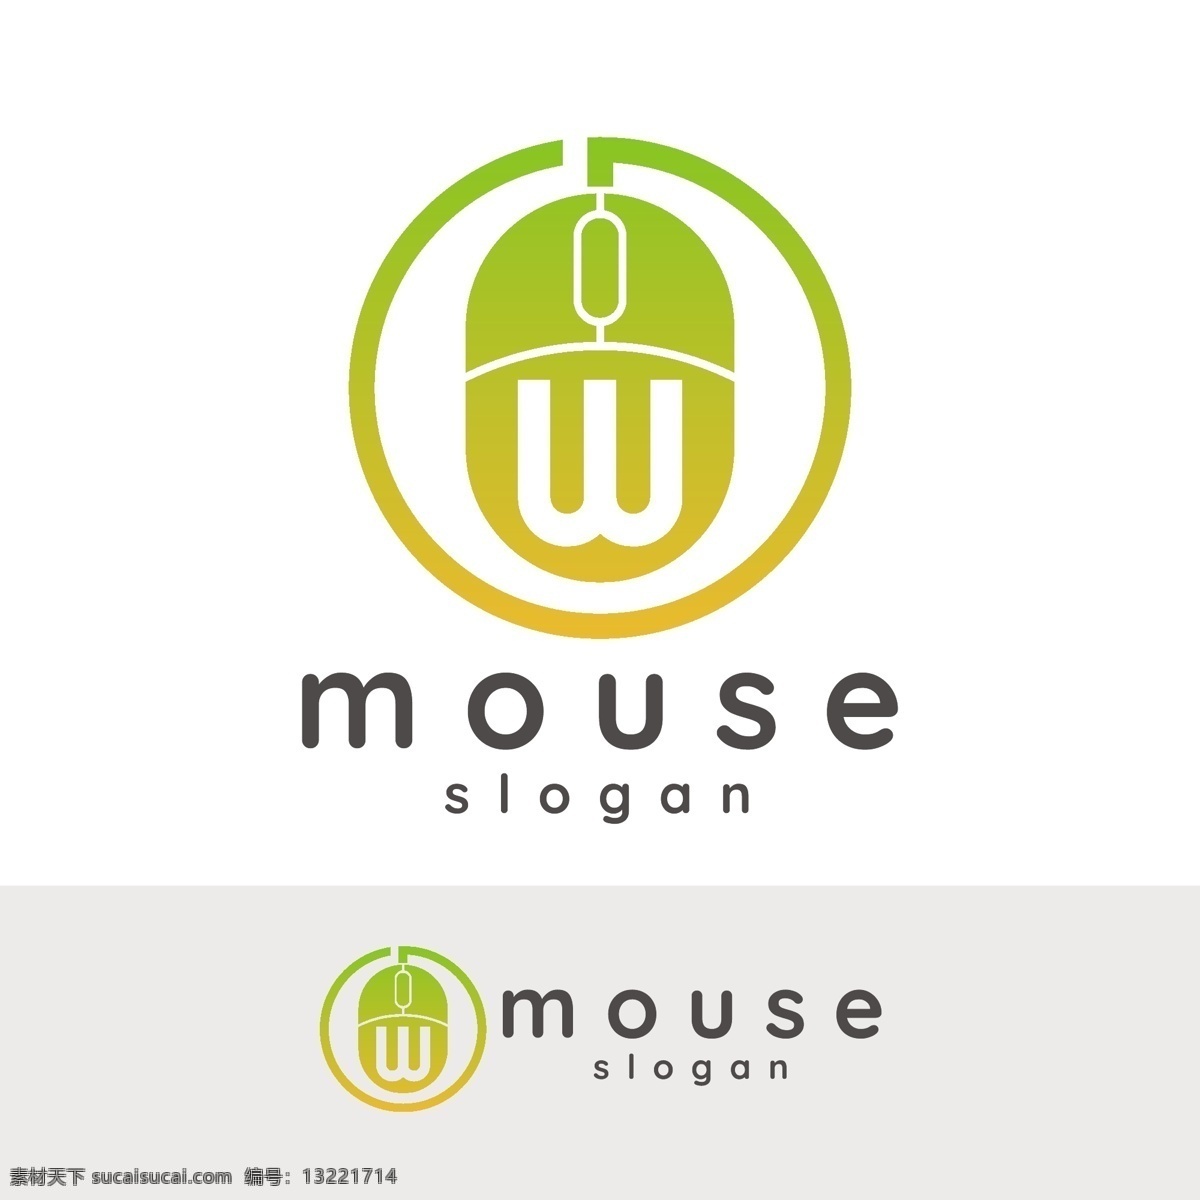 mouse 鼠标 logo 图标 鼠标logo 鼠标图标设计 鼠标商标 商标 鼠标icon 标志图标 其他图标